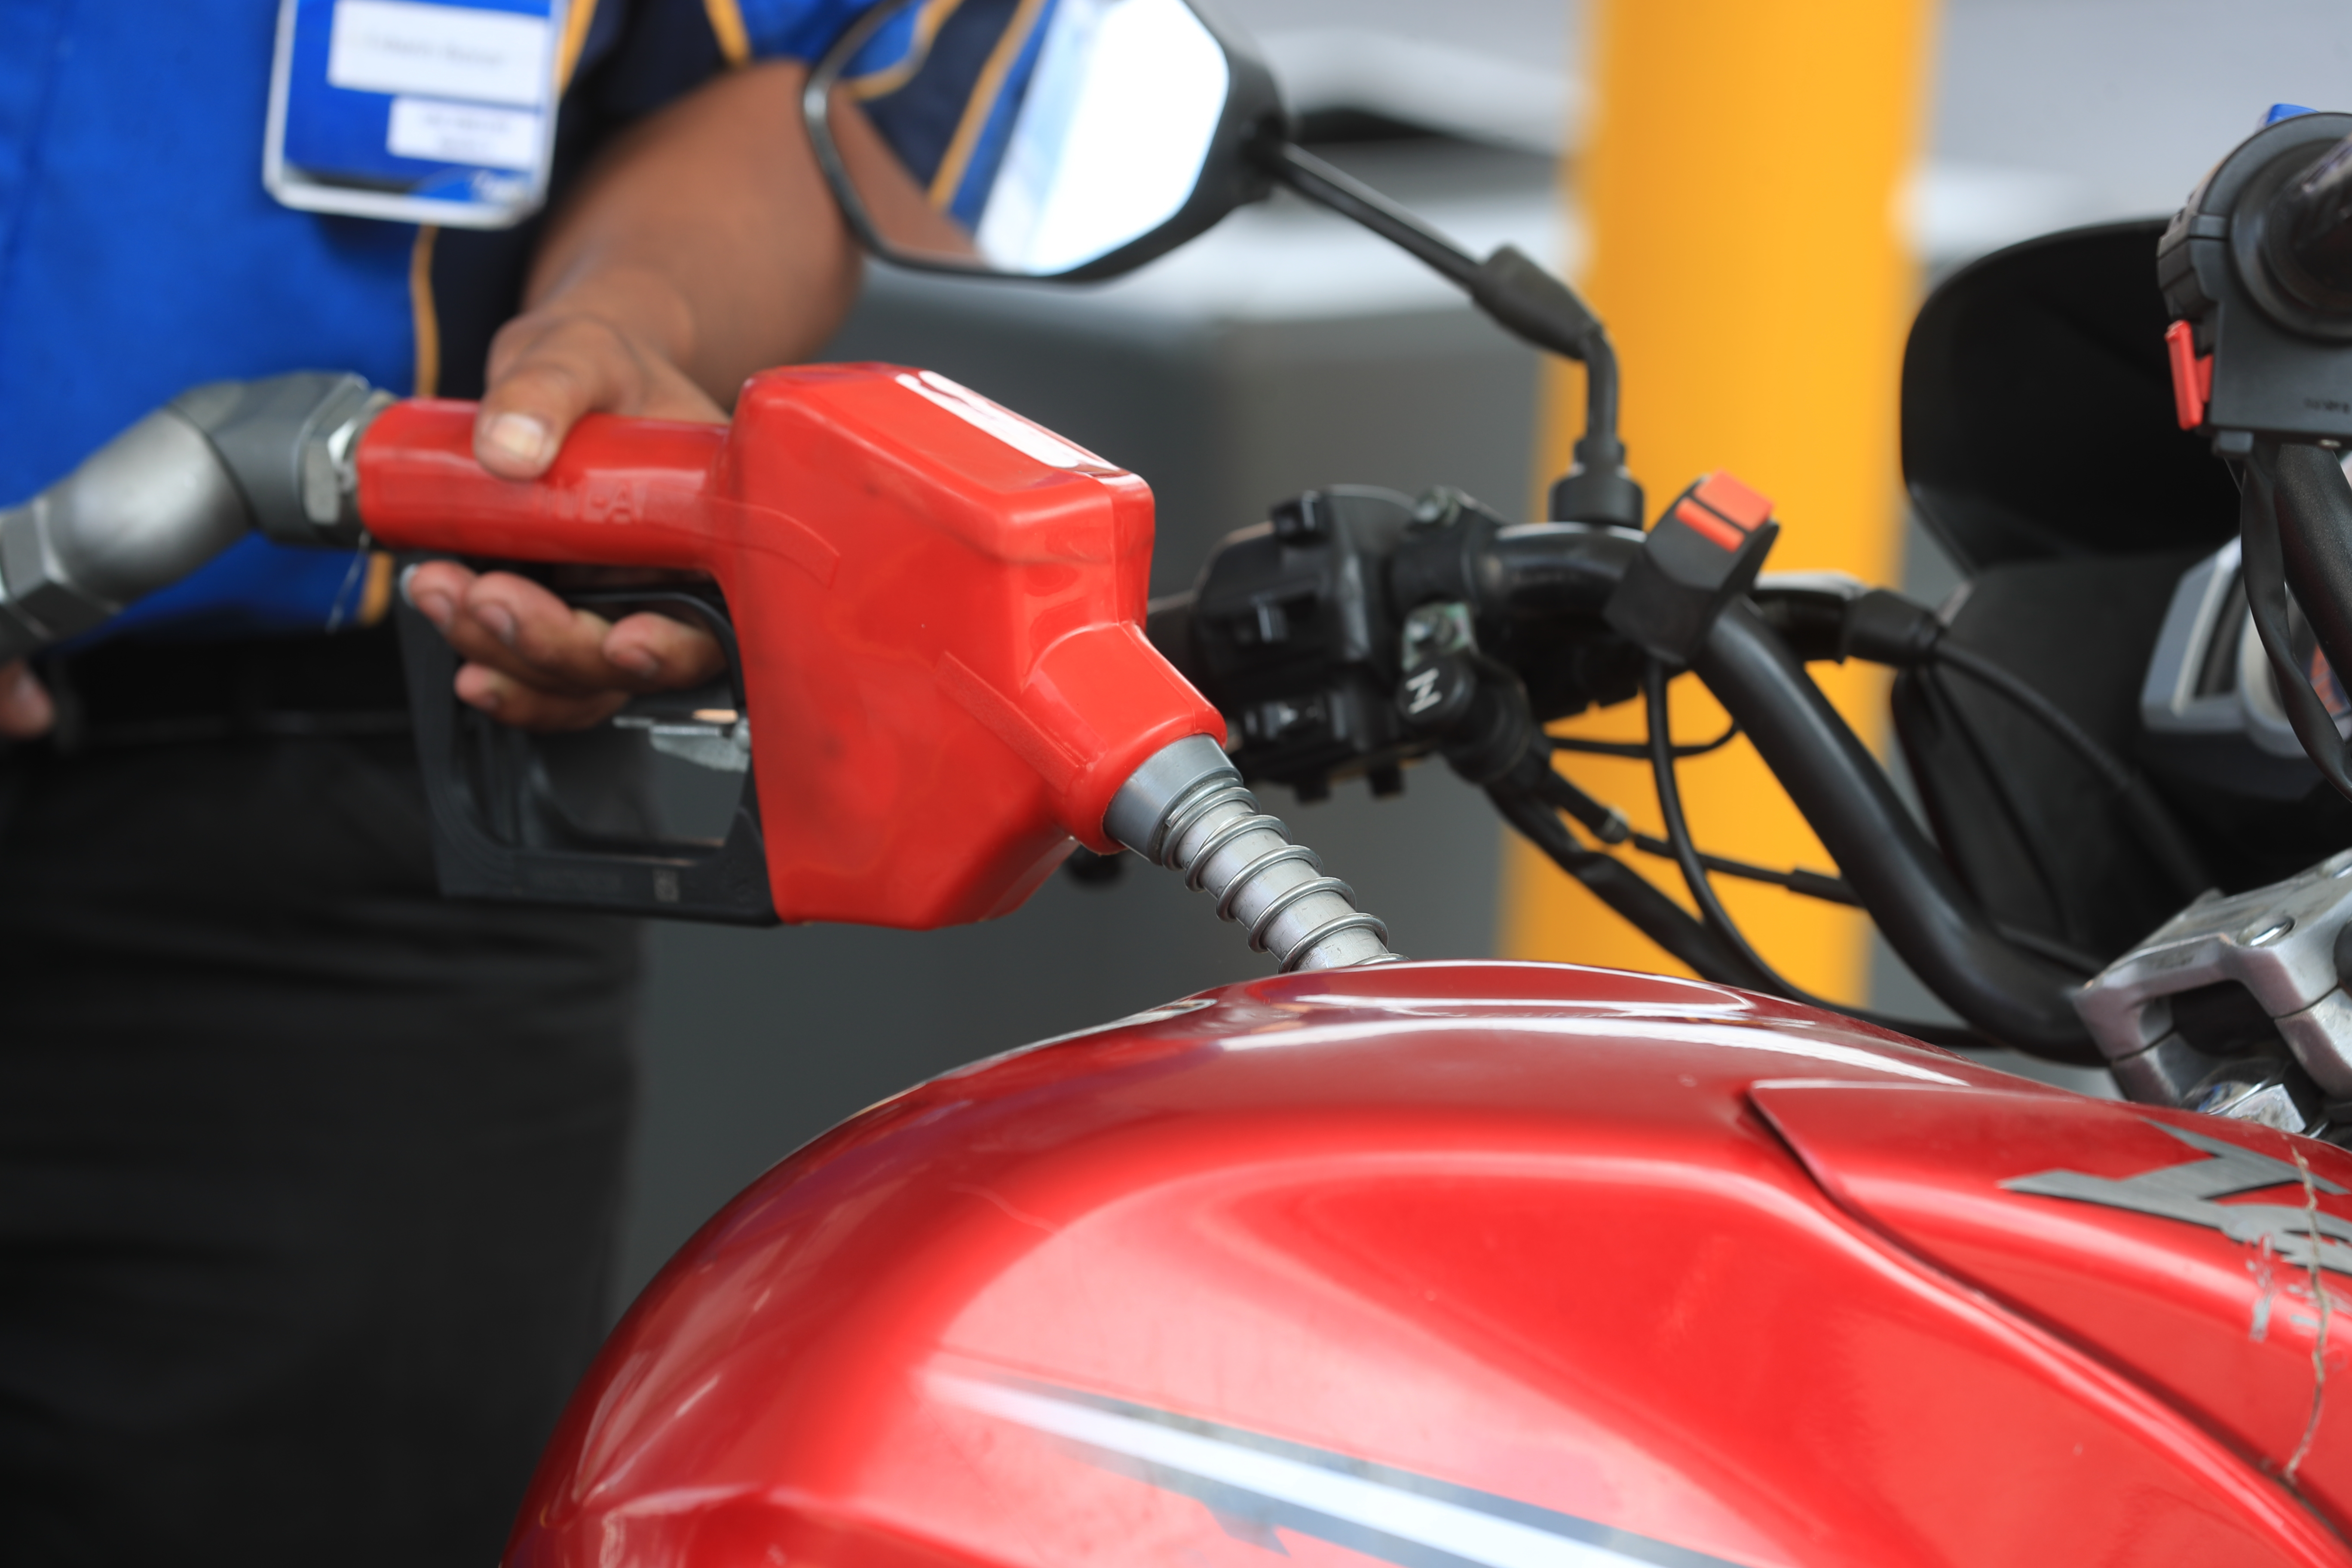 La recaudación tributaria mejoró en marzo por el aumento de precios de los combustibles en el mercado local, según un reporte preliminar. (Foto Prensa Libre: Hemeroteca)